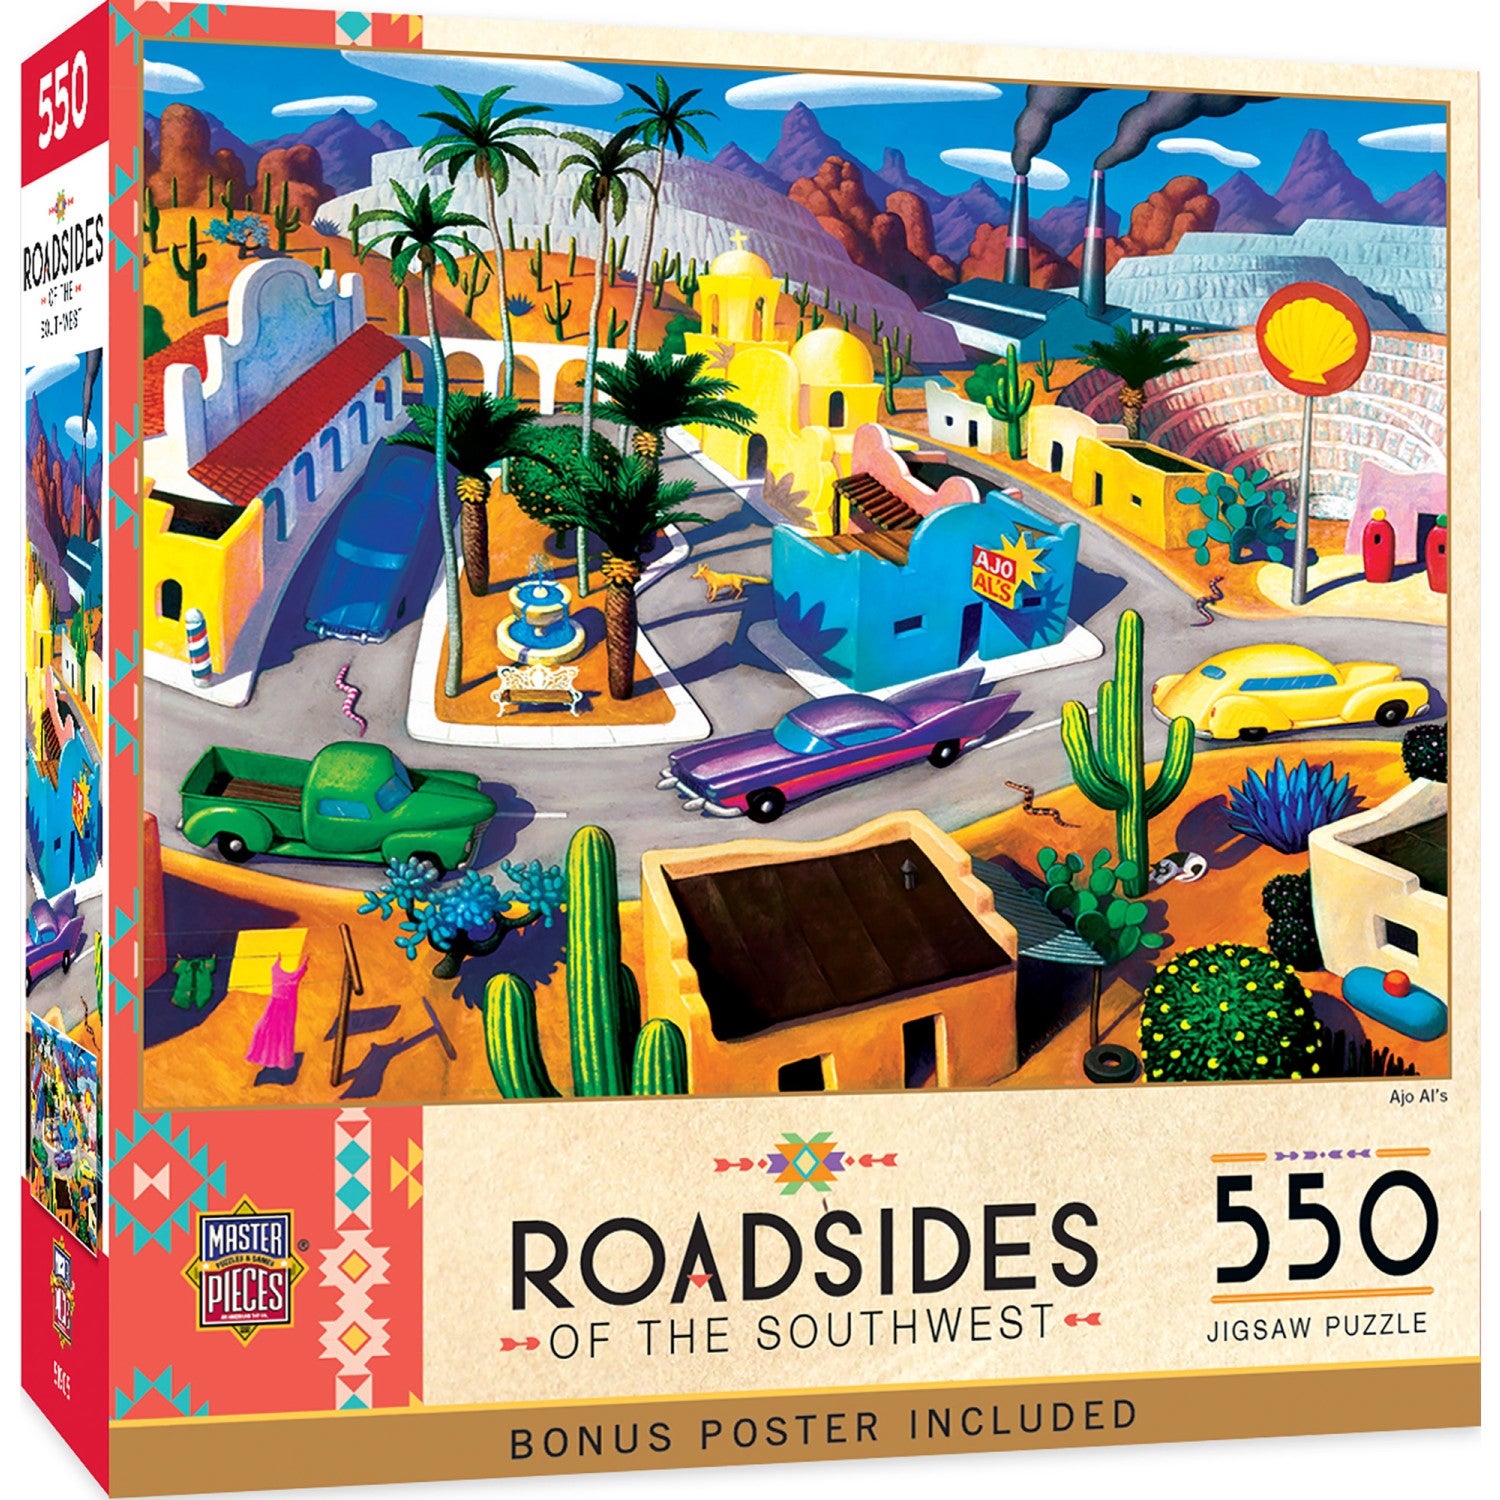 Roadsides of the Southwest - Ajo Al's 550 Piece Puzzle